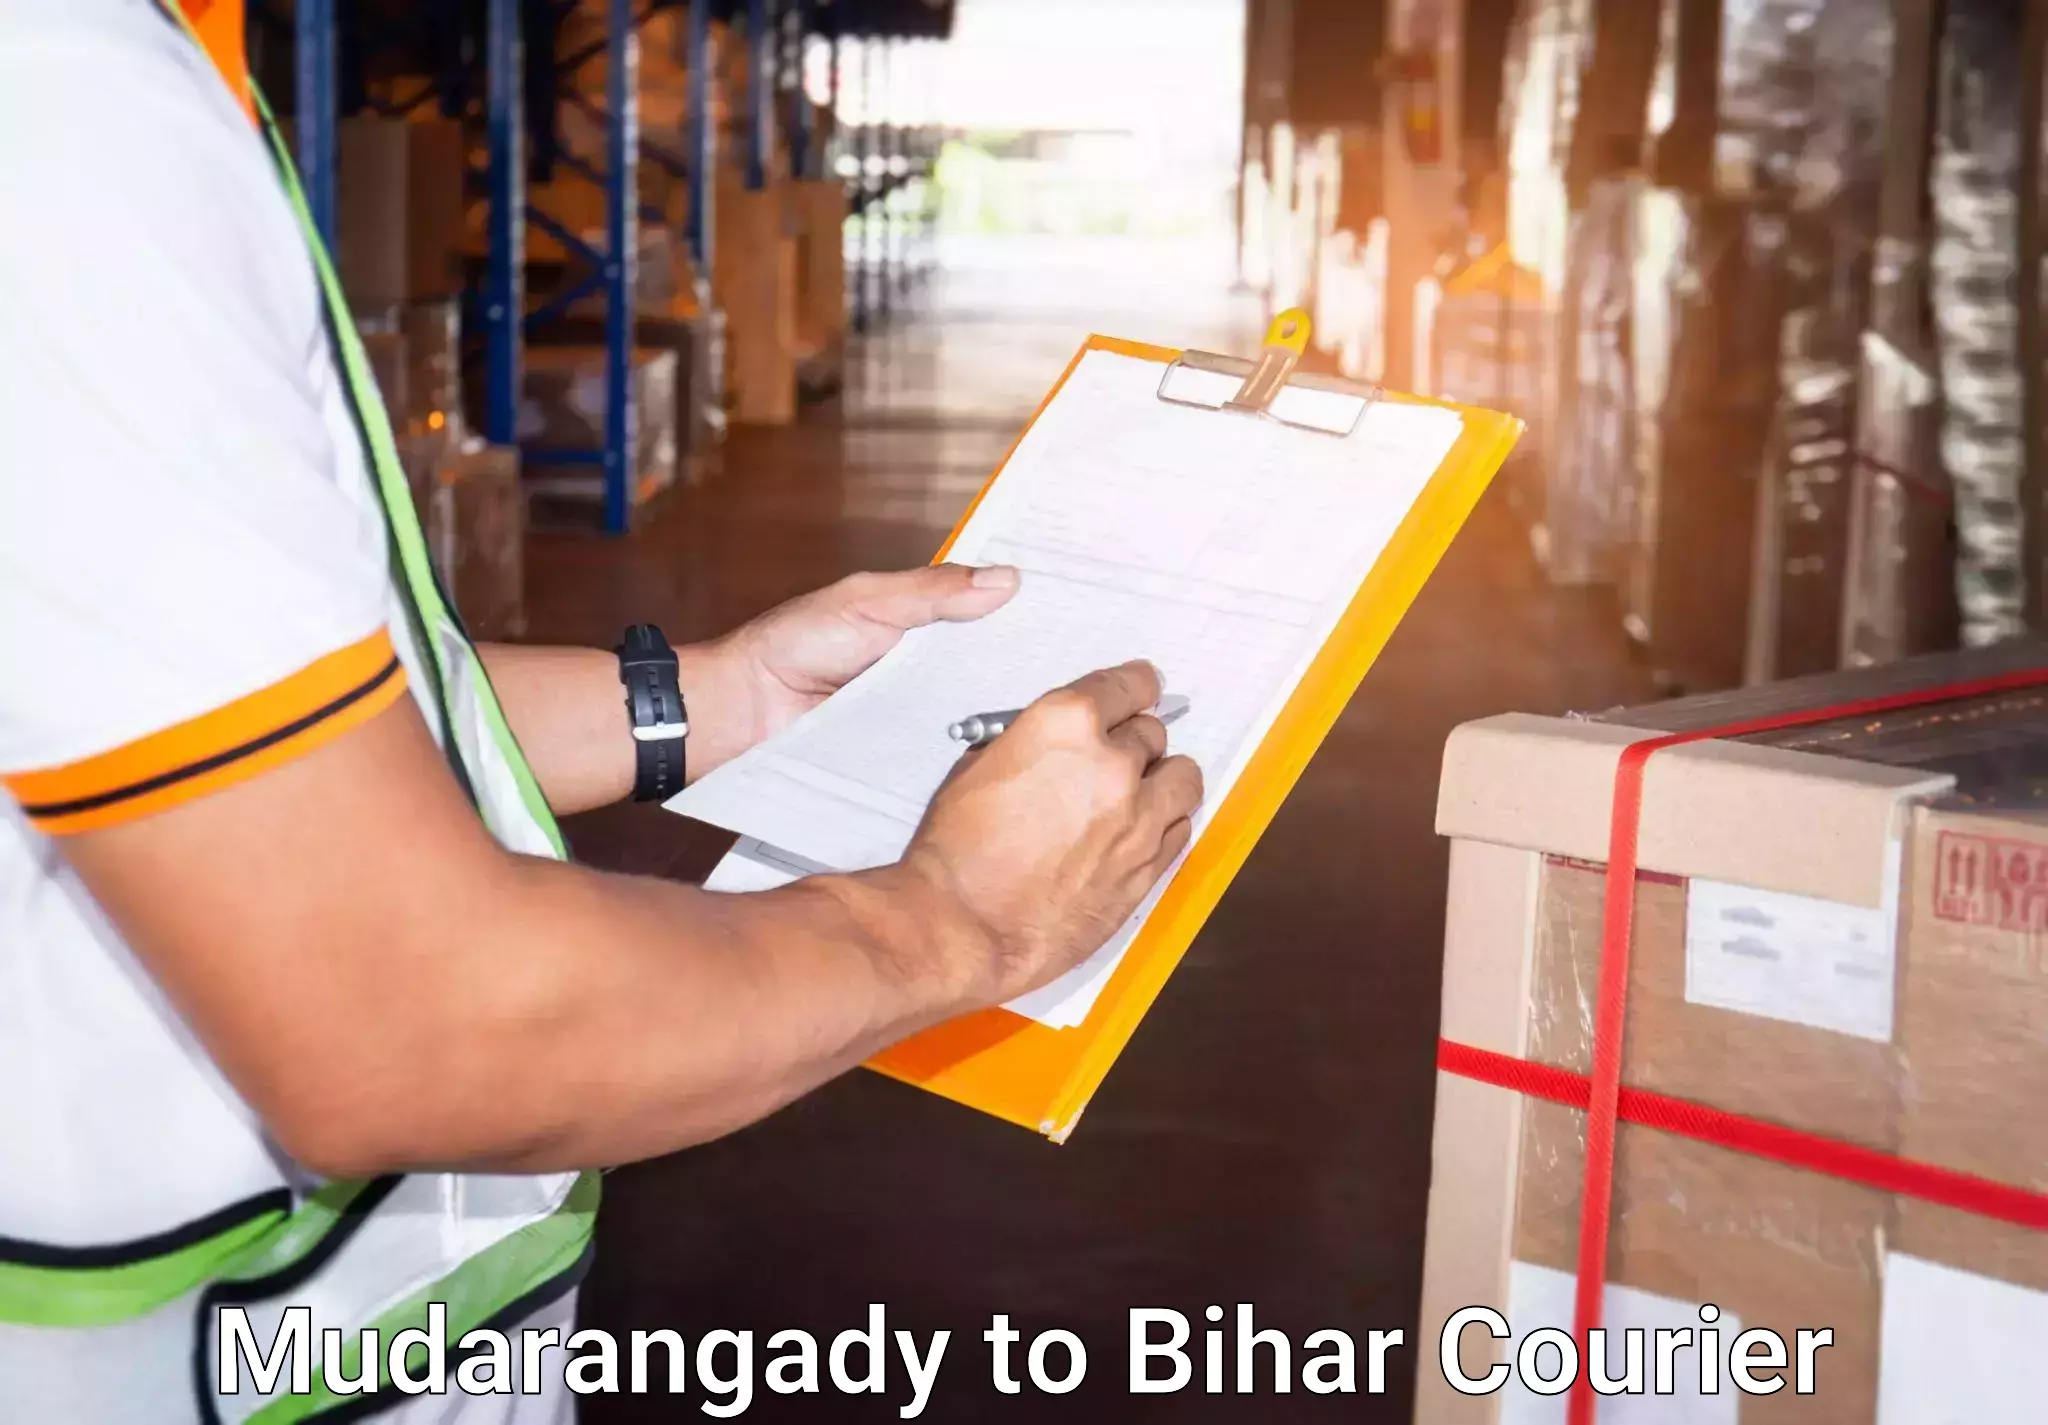 Baggage transport technology Mudarangady to Bihar